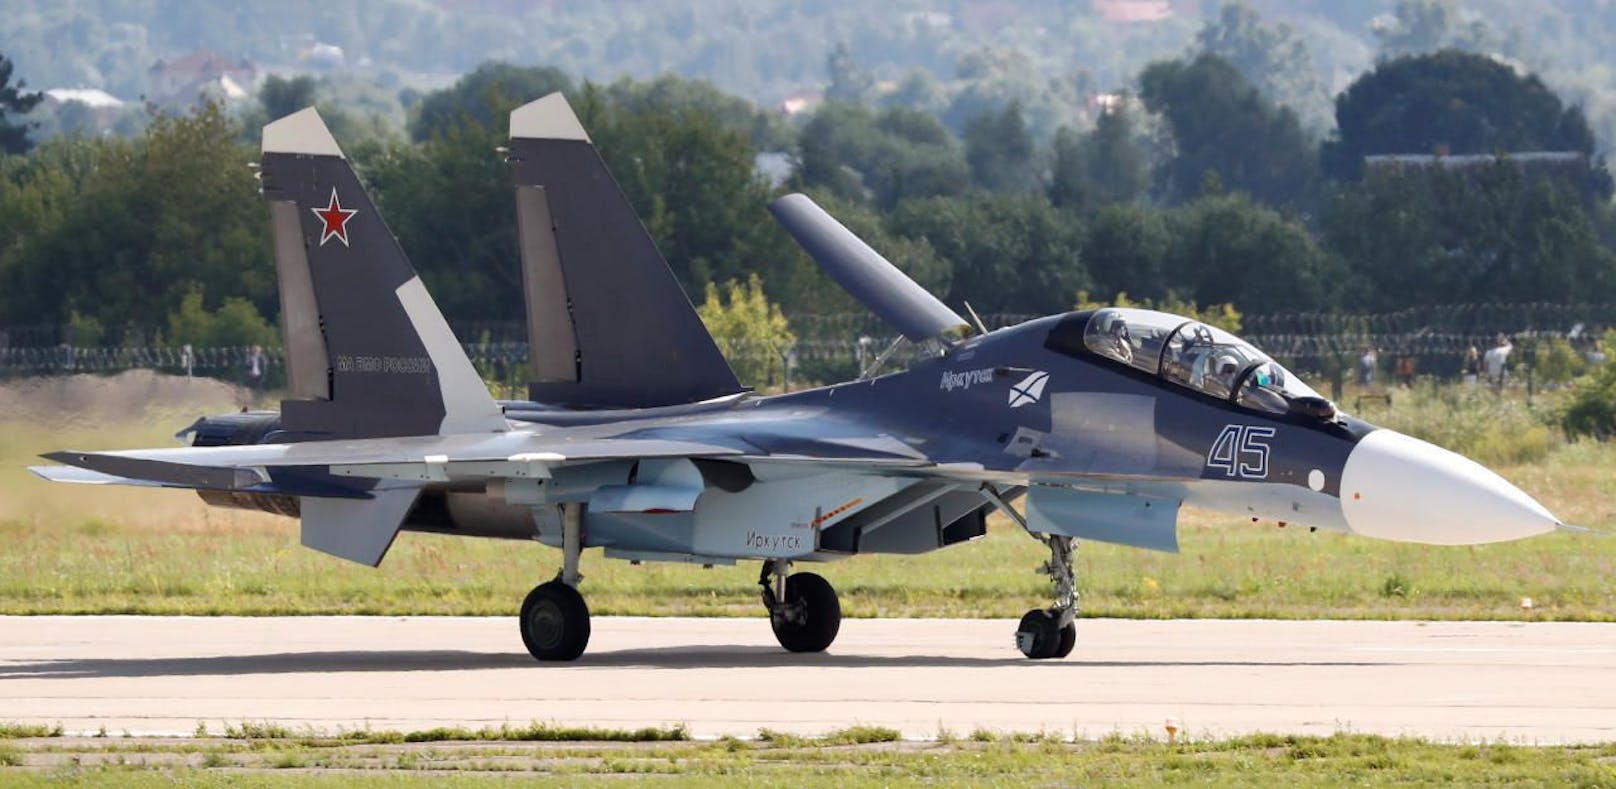 (Symbolbild) Ein russischer Kampfjet vom Typ Su-30.